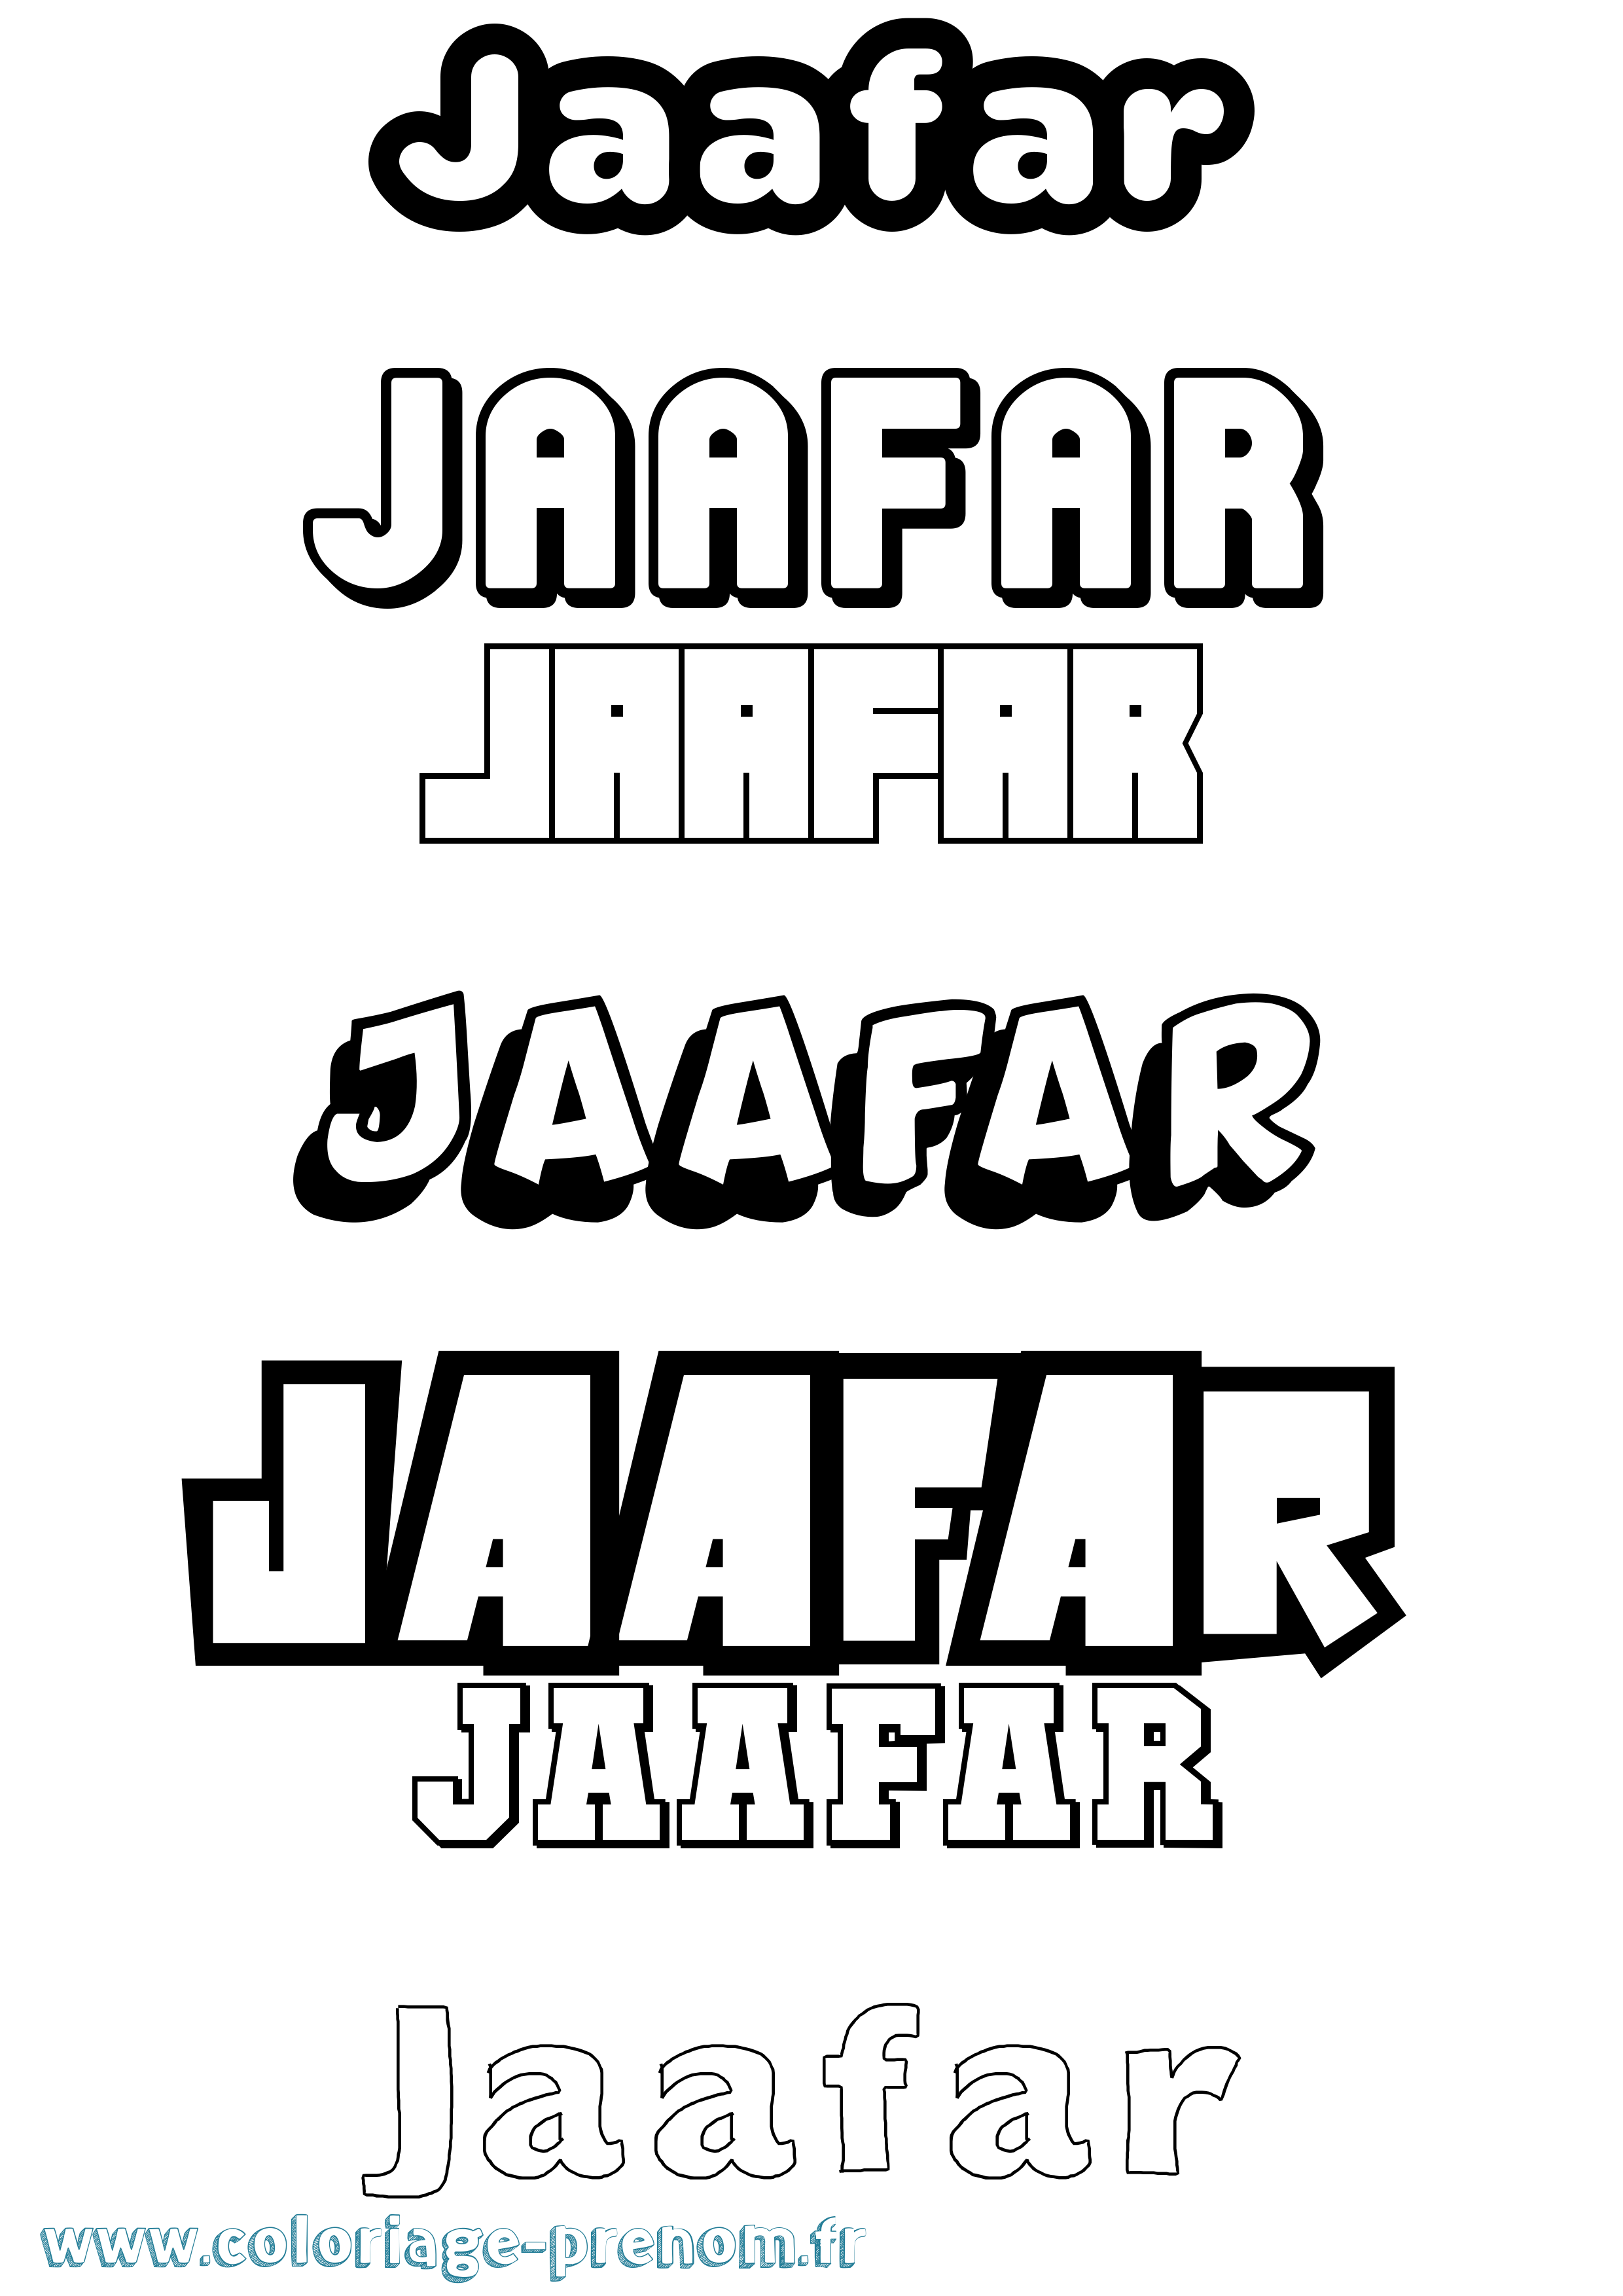 Coloriage prénom Jaafar Simple